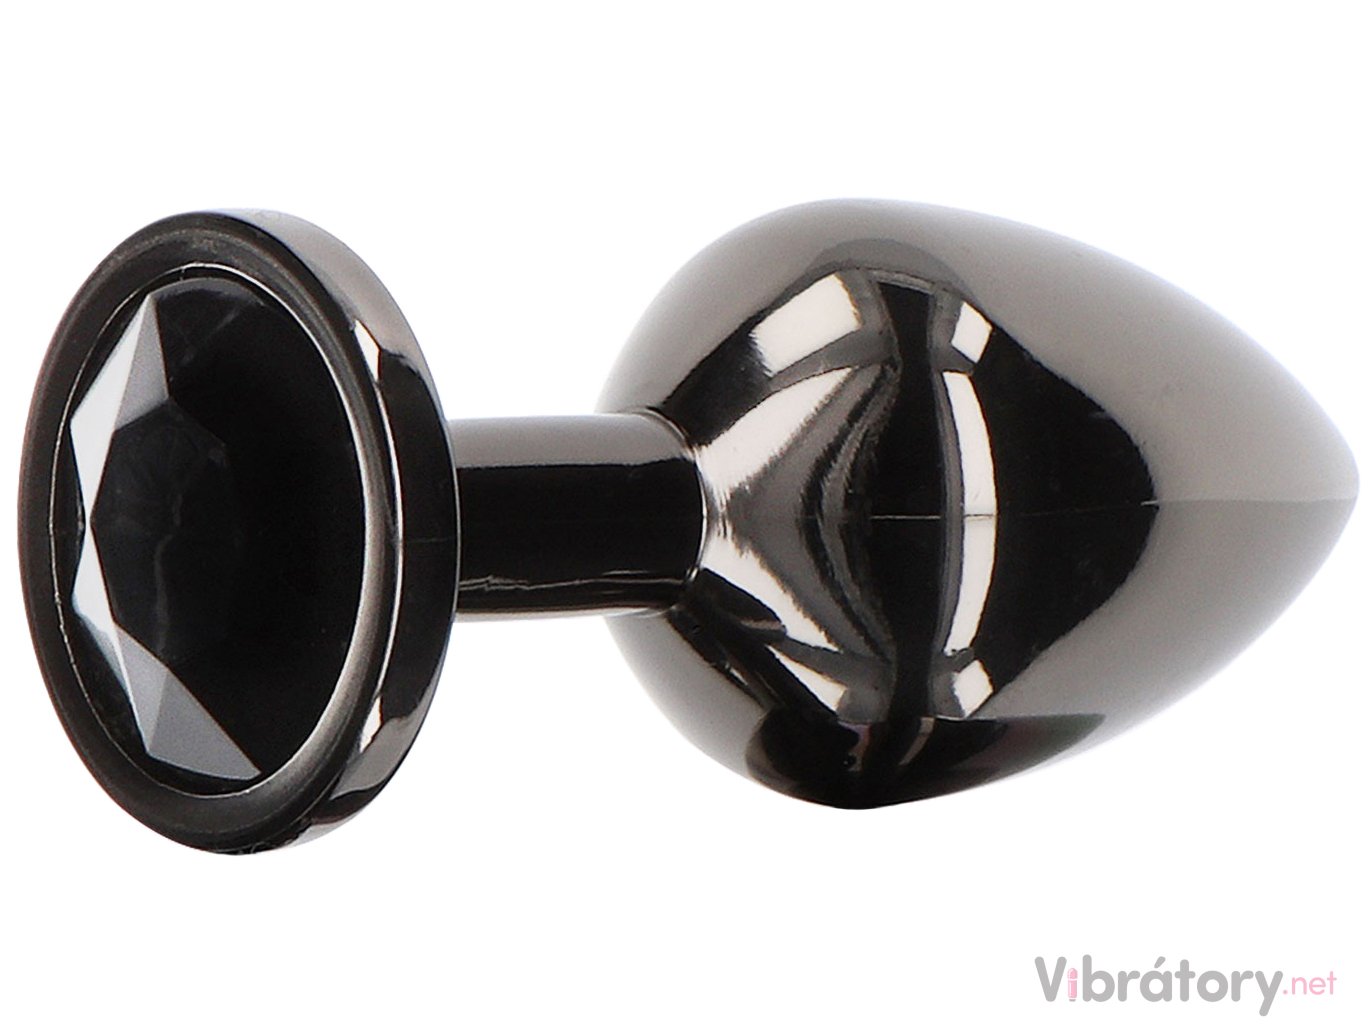 Taboom Luxusní anální kolík se šperkem Taboom Large, černý